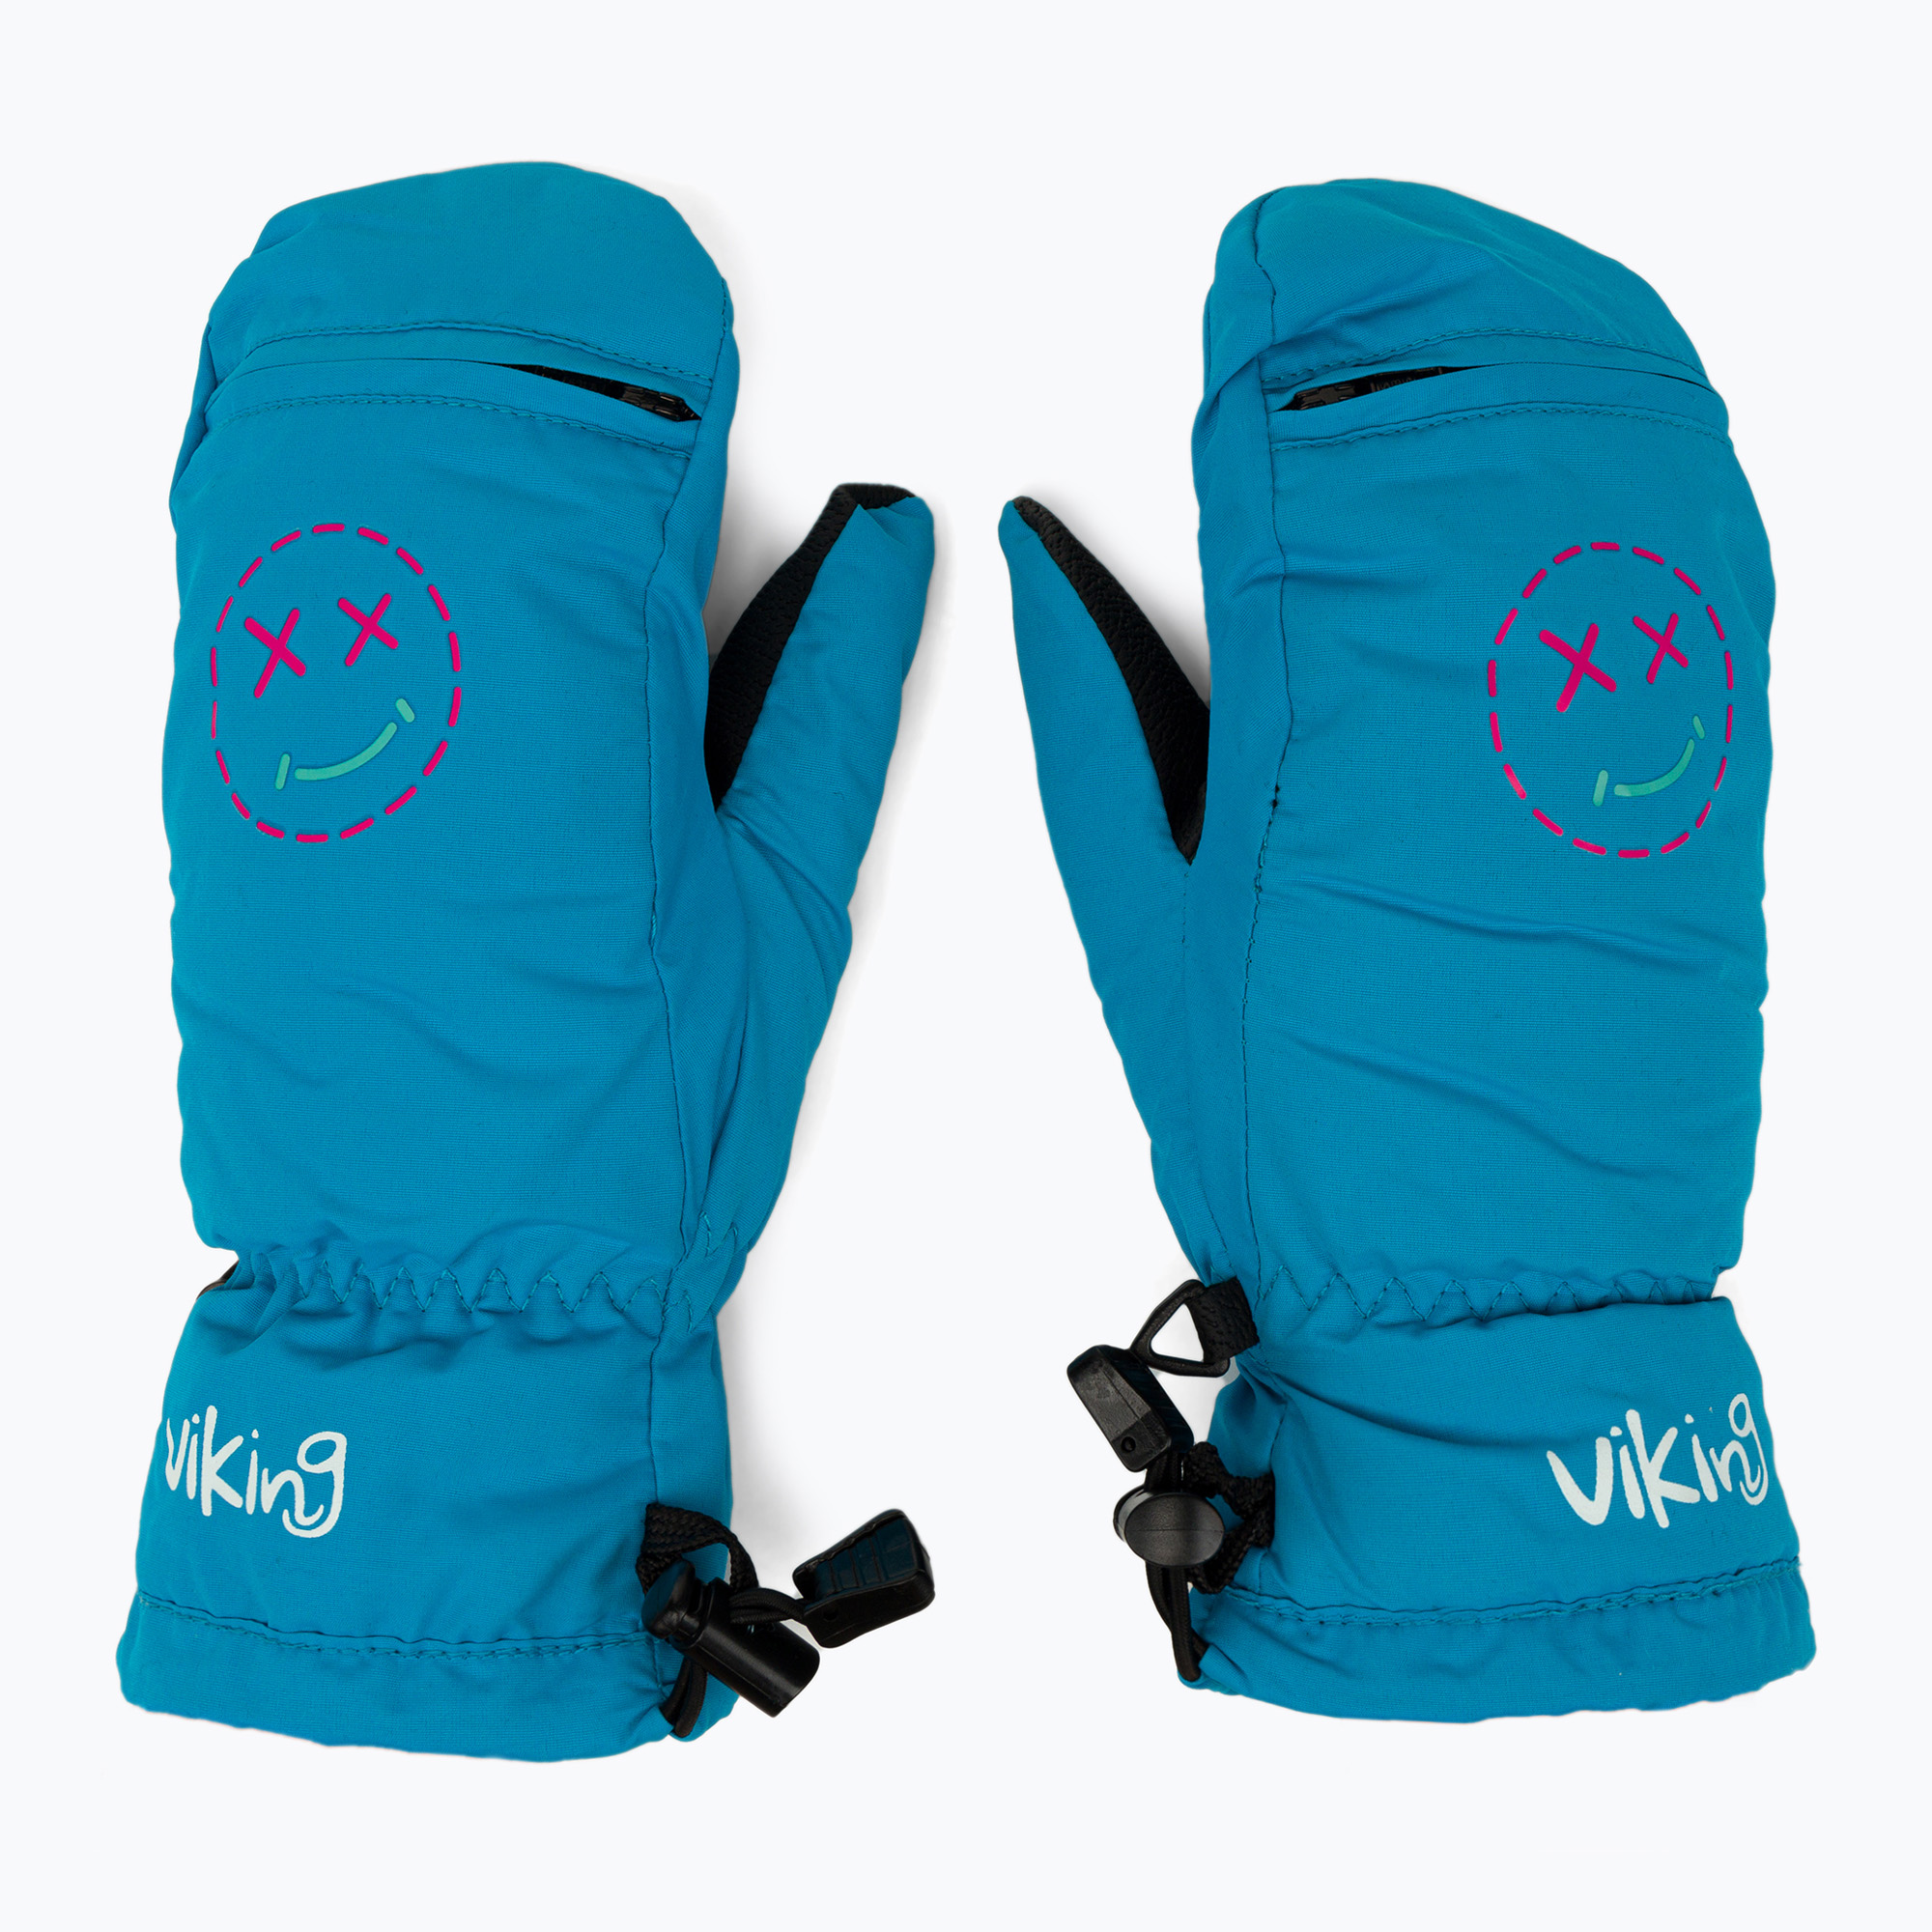 Detské lyžiarske rukavice Viking Smaili modré 125/21/2285